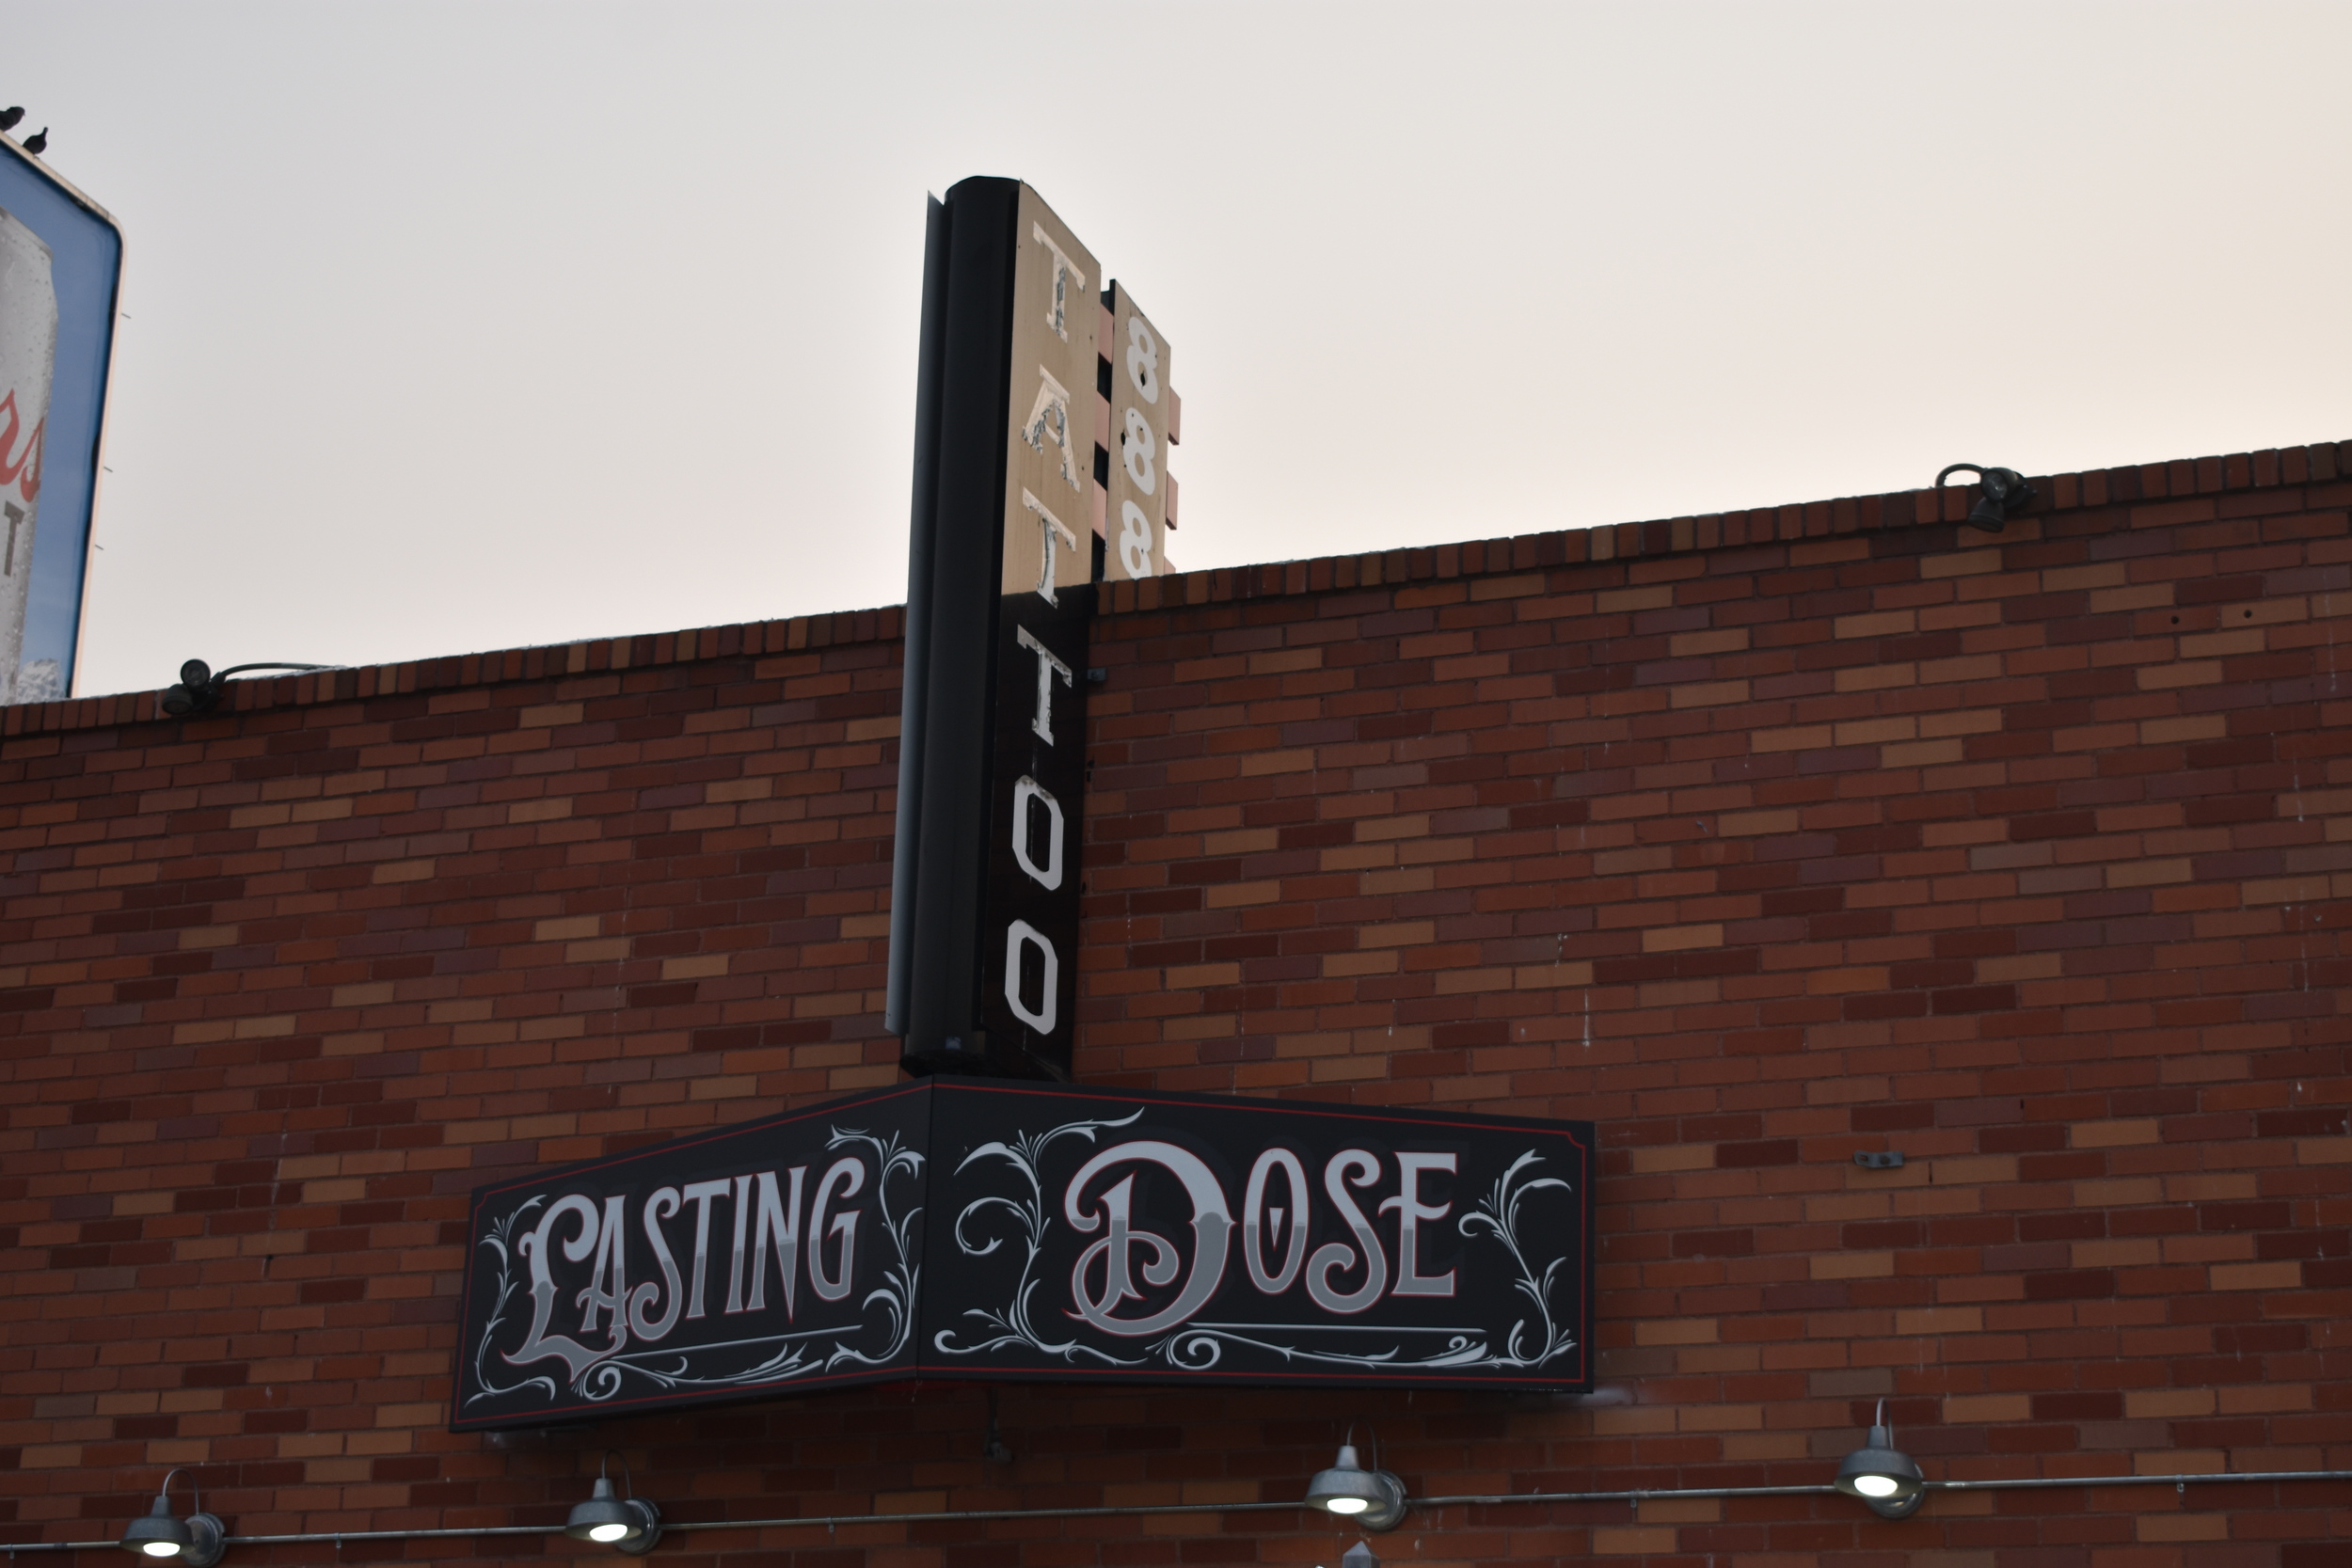 Lasting Dose Tattoo wall mounted signs, Reno, Nevada